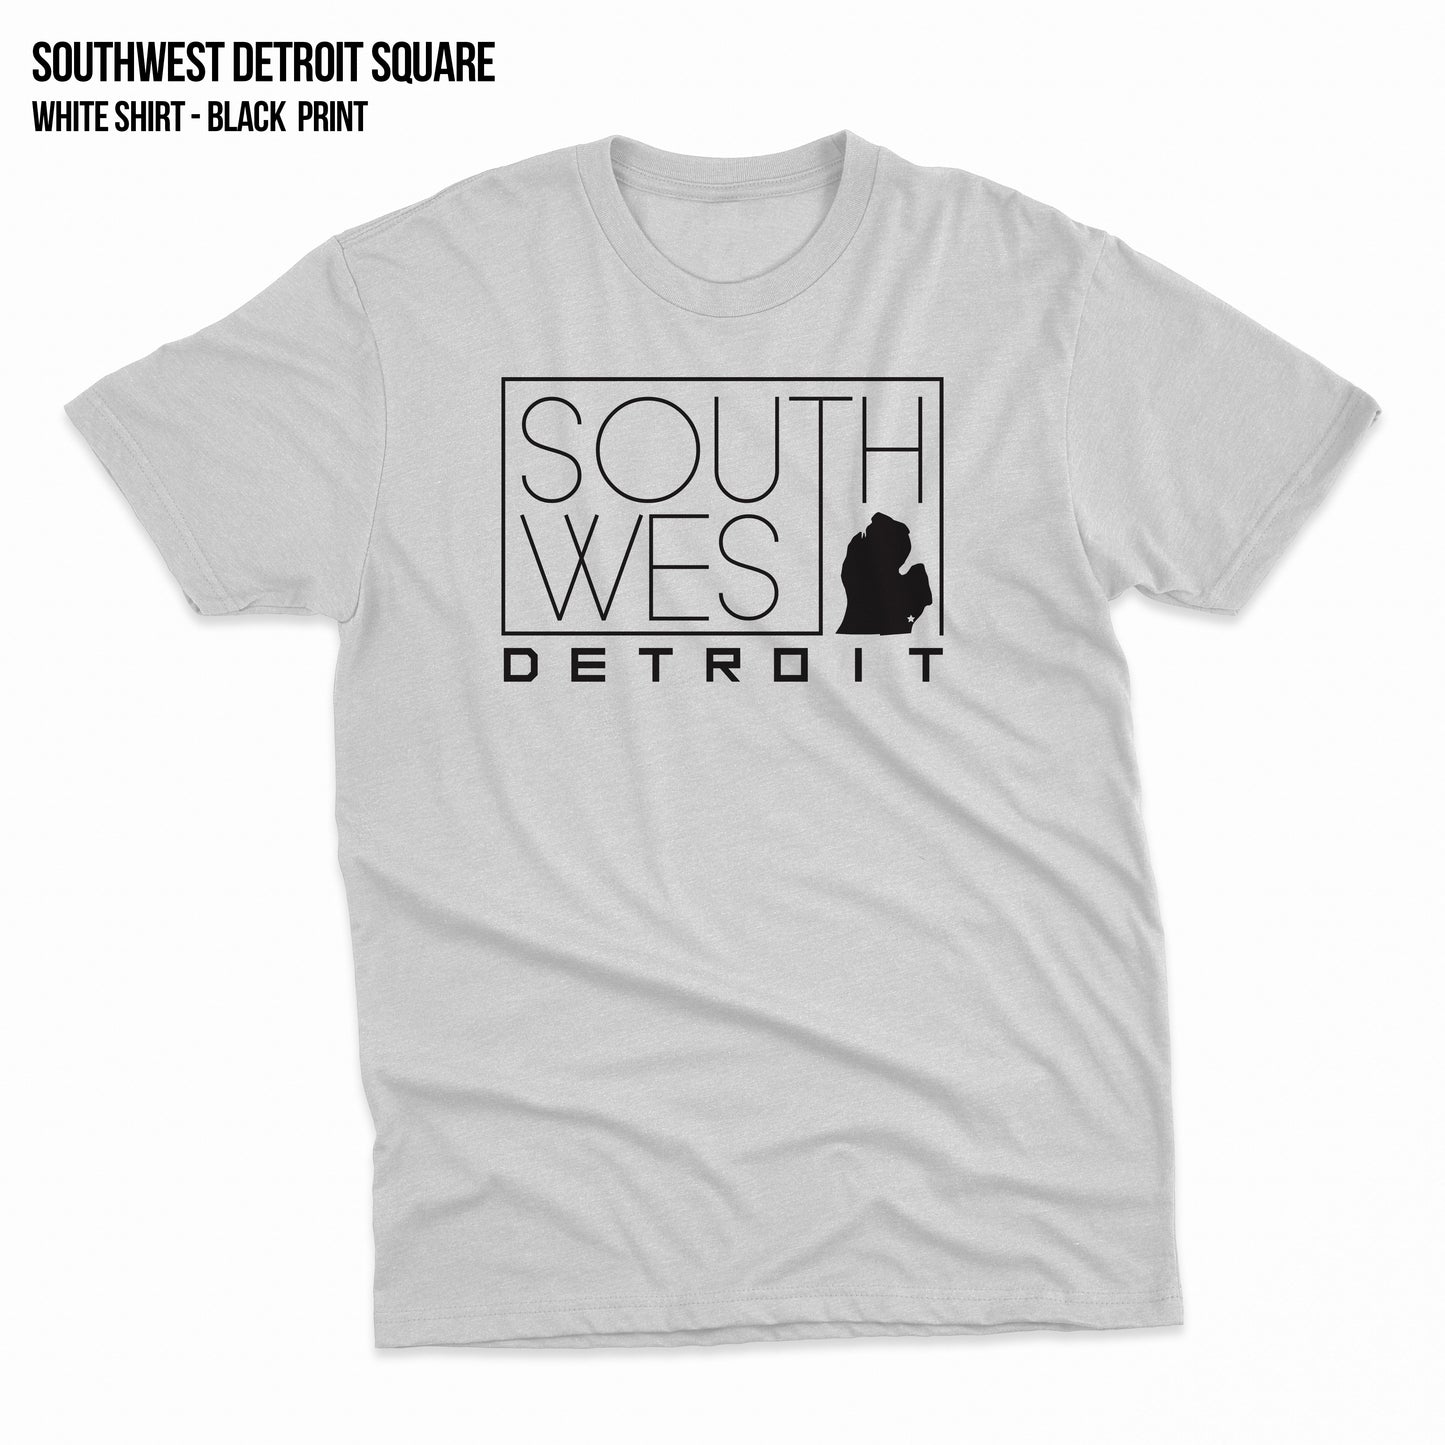 Southwest Detroit Square